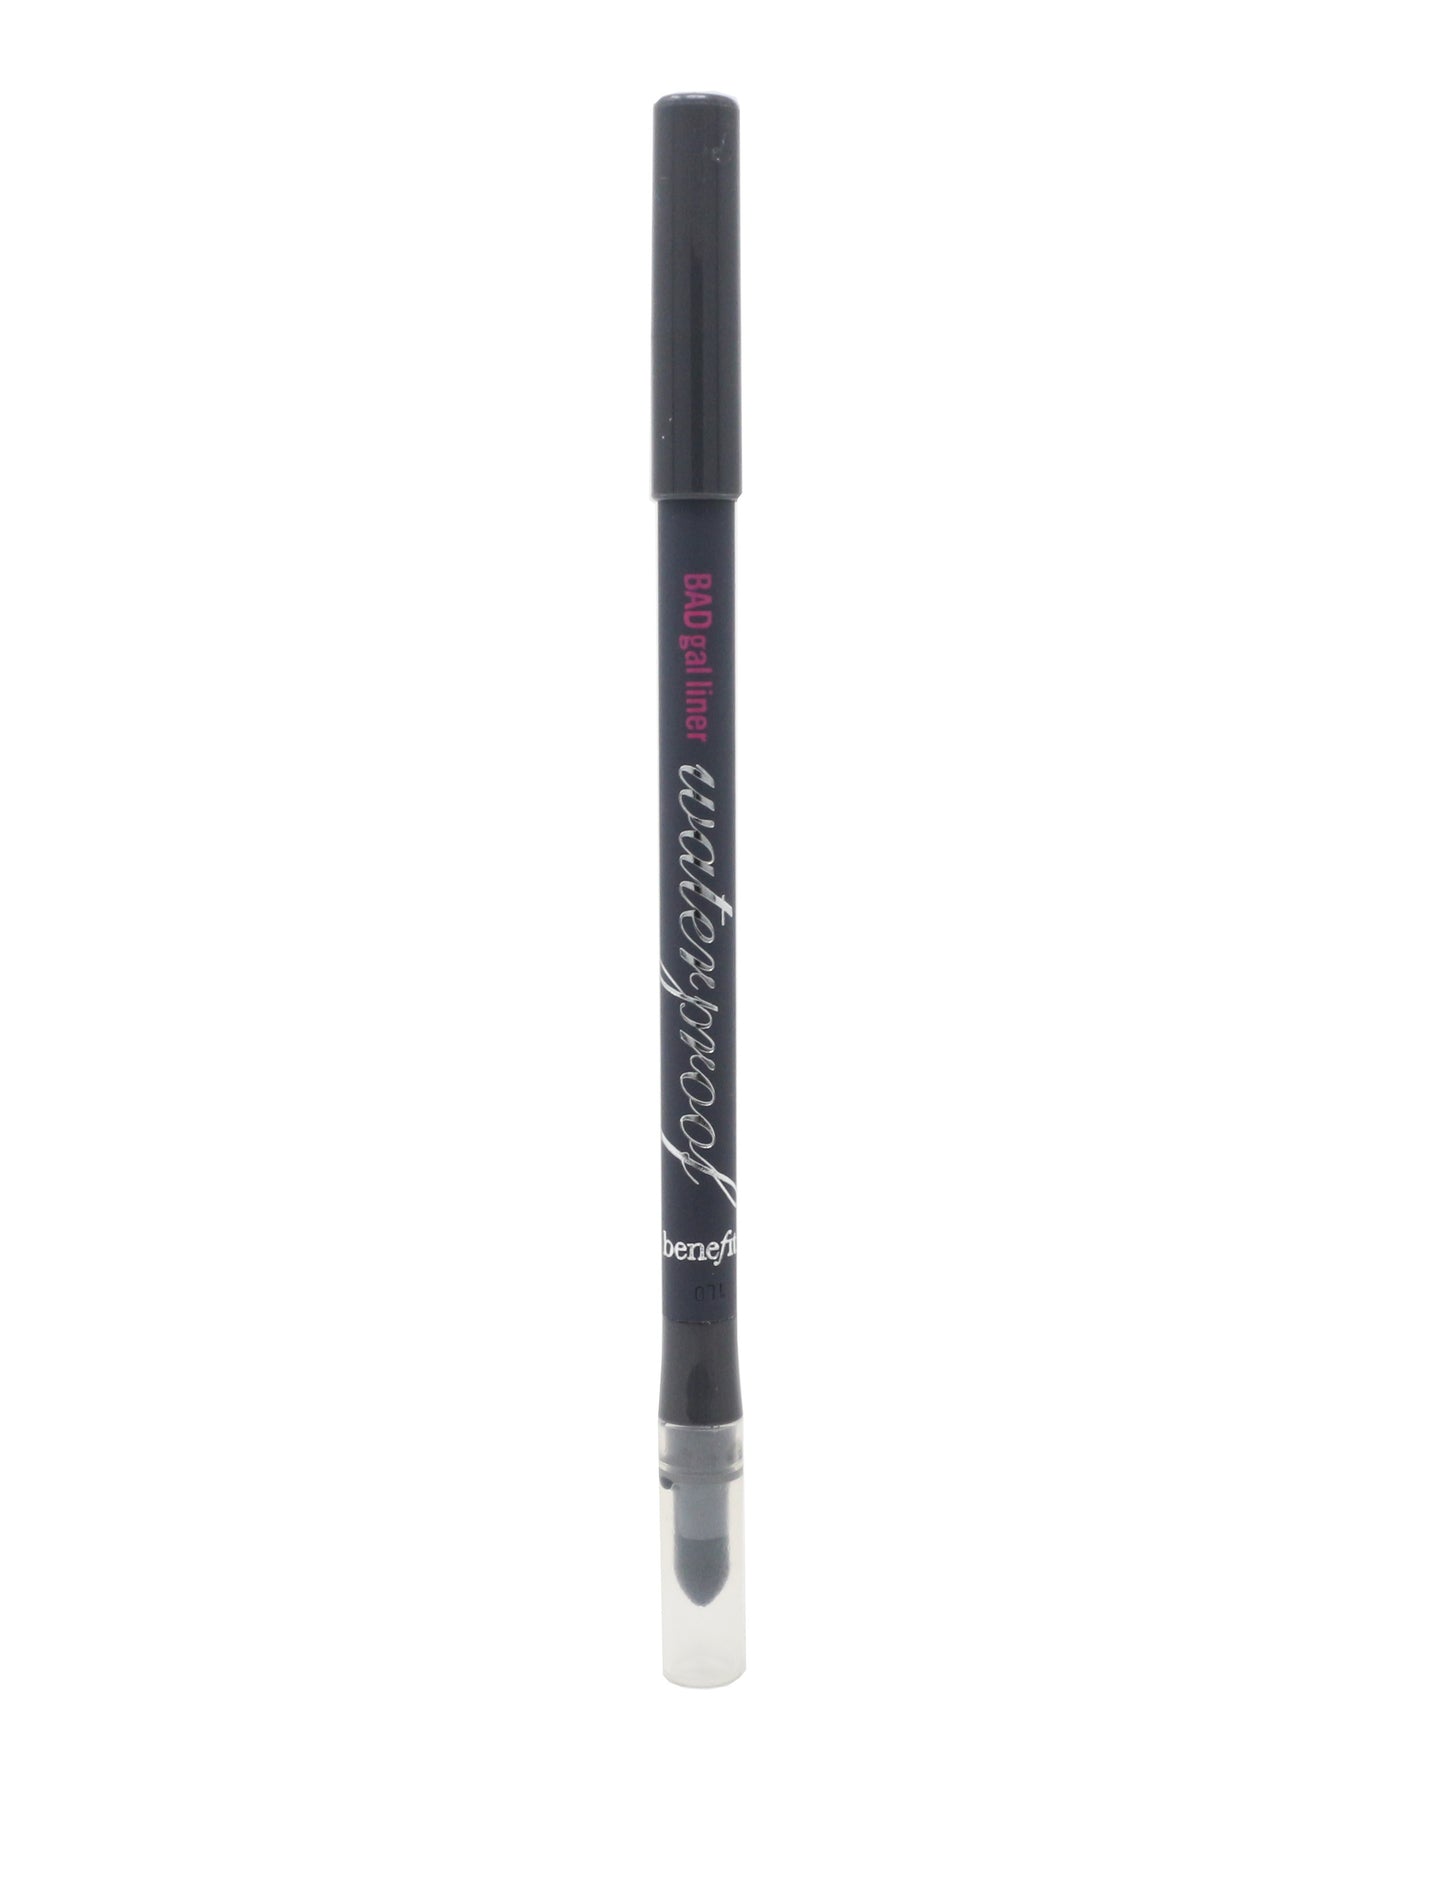 Bad Gal Liner Waterproof Eye Pencil 1.2 mL